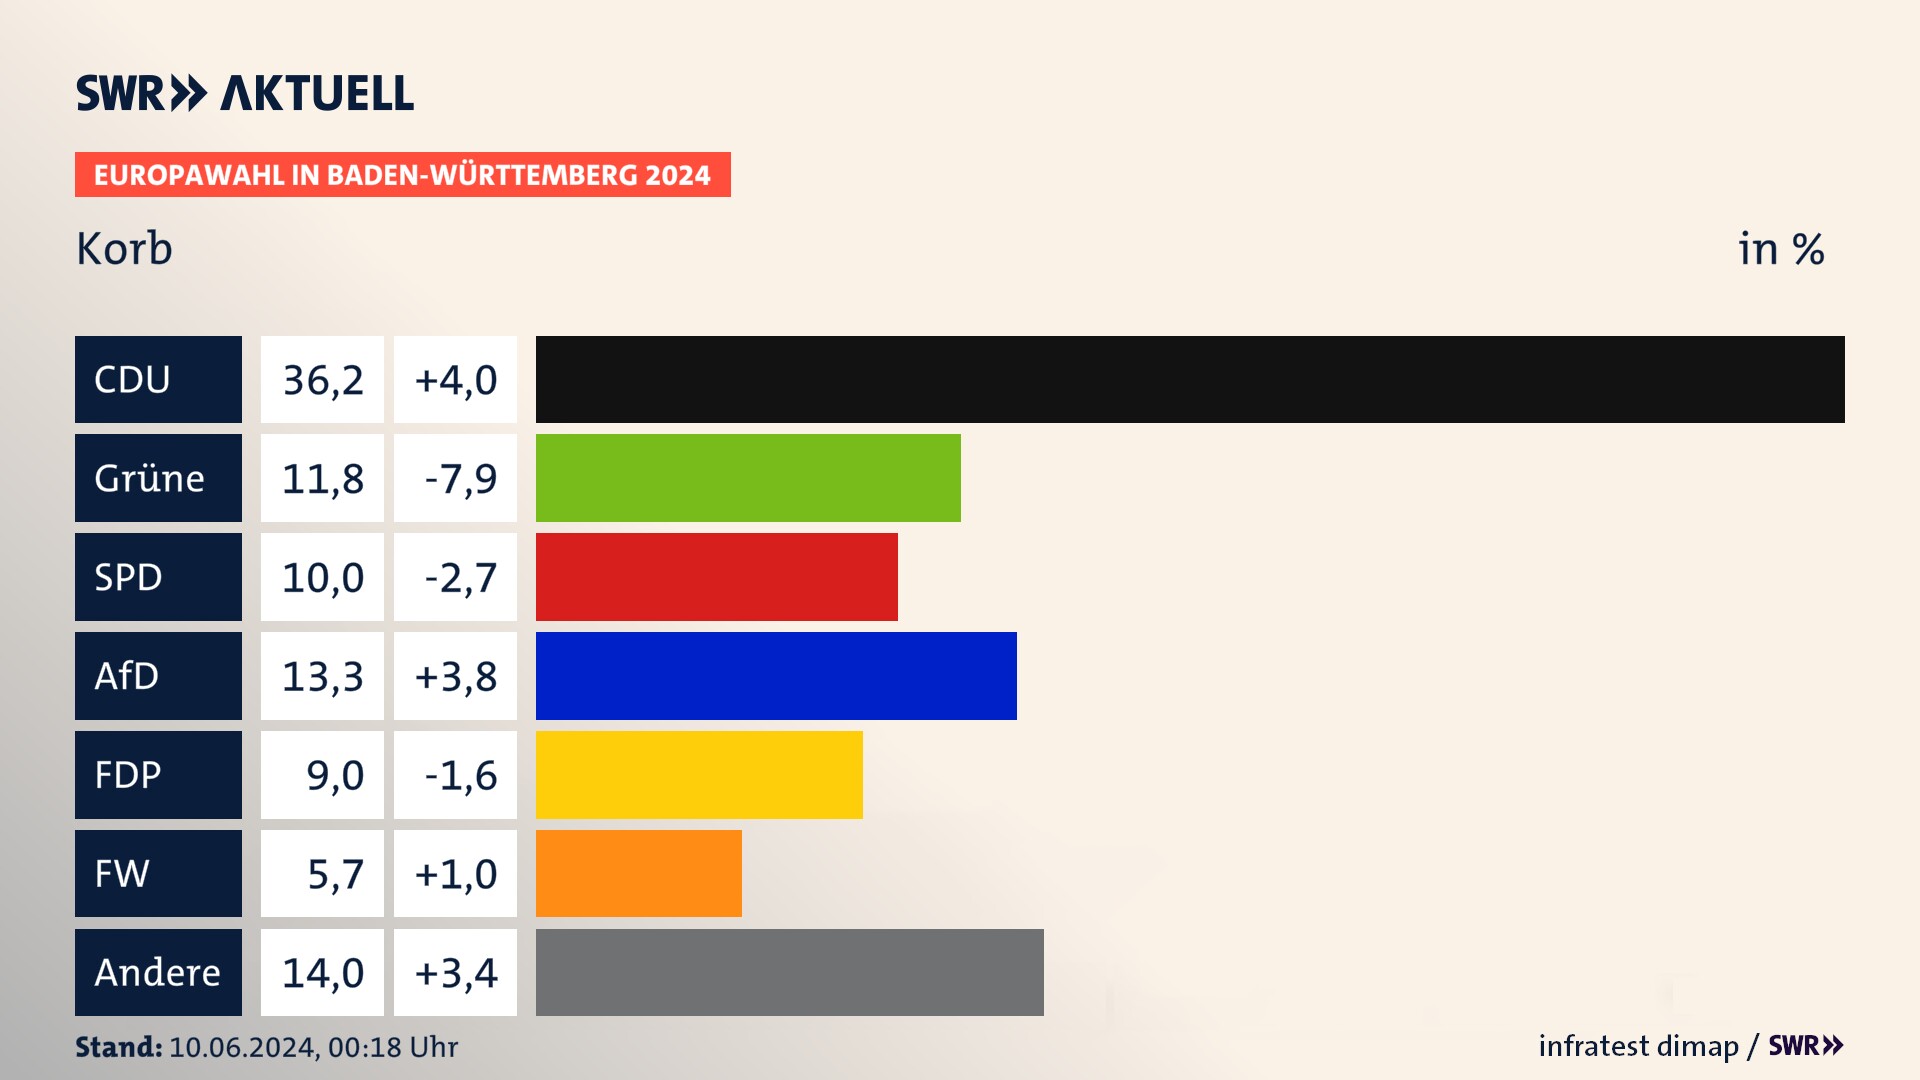 Europawahl 2024 Endergebnis Zweitstimme für Korb. In Korb erzielt die CDU 36,2 Prozent der gültigen  Stimmen. Die Grünen landen bei 11,8 Prozent. Die SPD erreicht 10,0 Prozent. Die AfD kommt auf 13,3 Prozent. Die FDP landet bei 9,0 Prozent. Die Freien Wähler erreichen 5,7 Prozent.